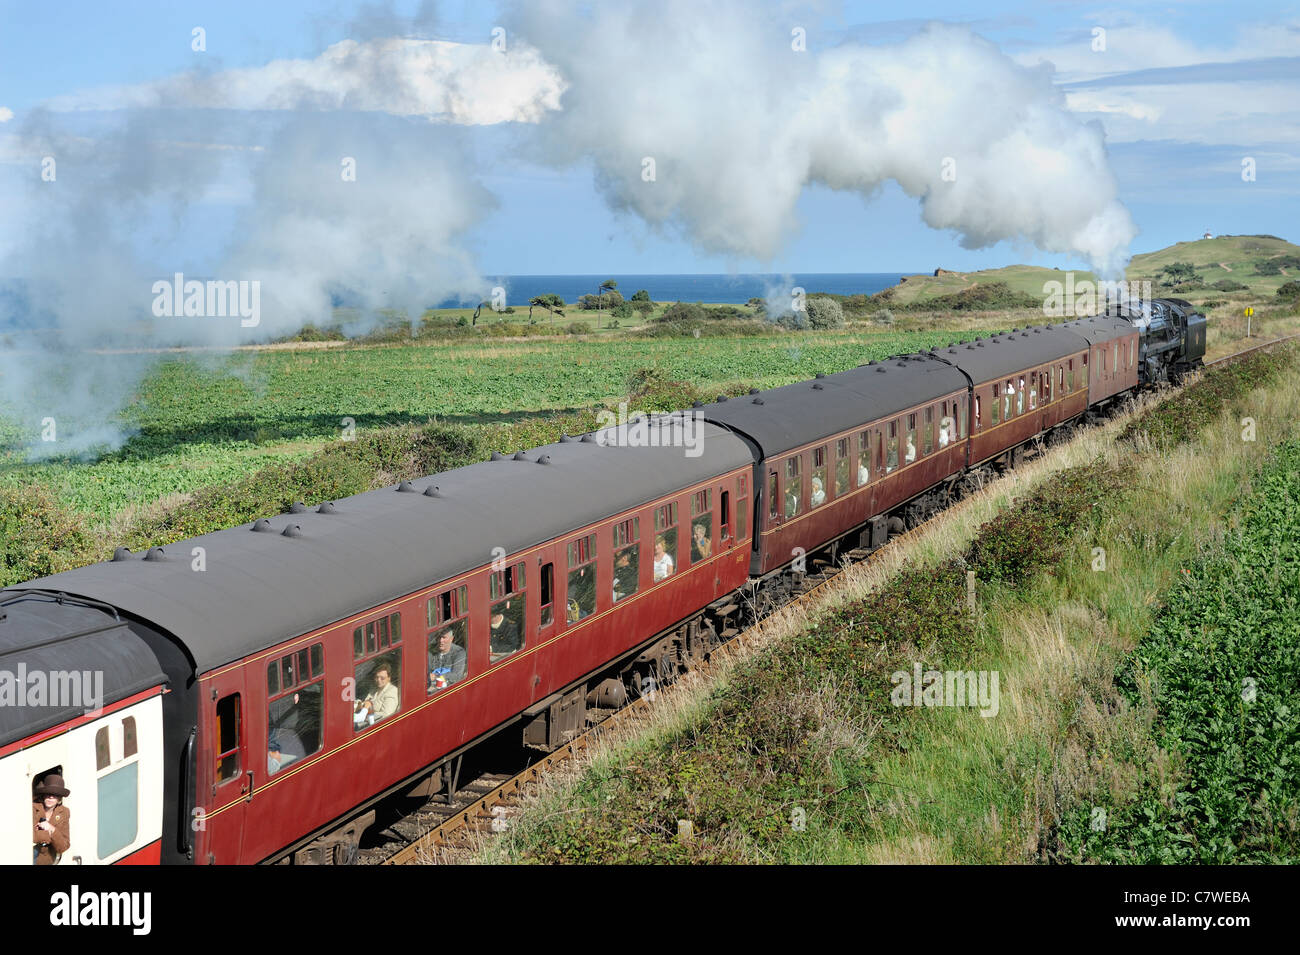 Chemin de fer à vapeur, North Norfolk Railway, ligne de pavot, UK, Septembre Banque D'Images